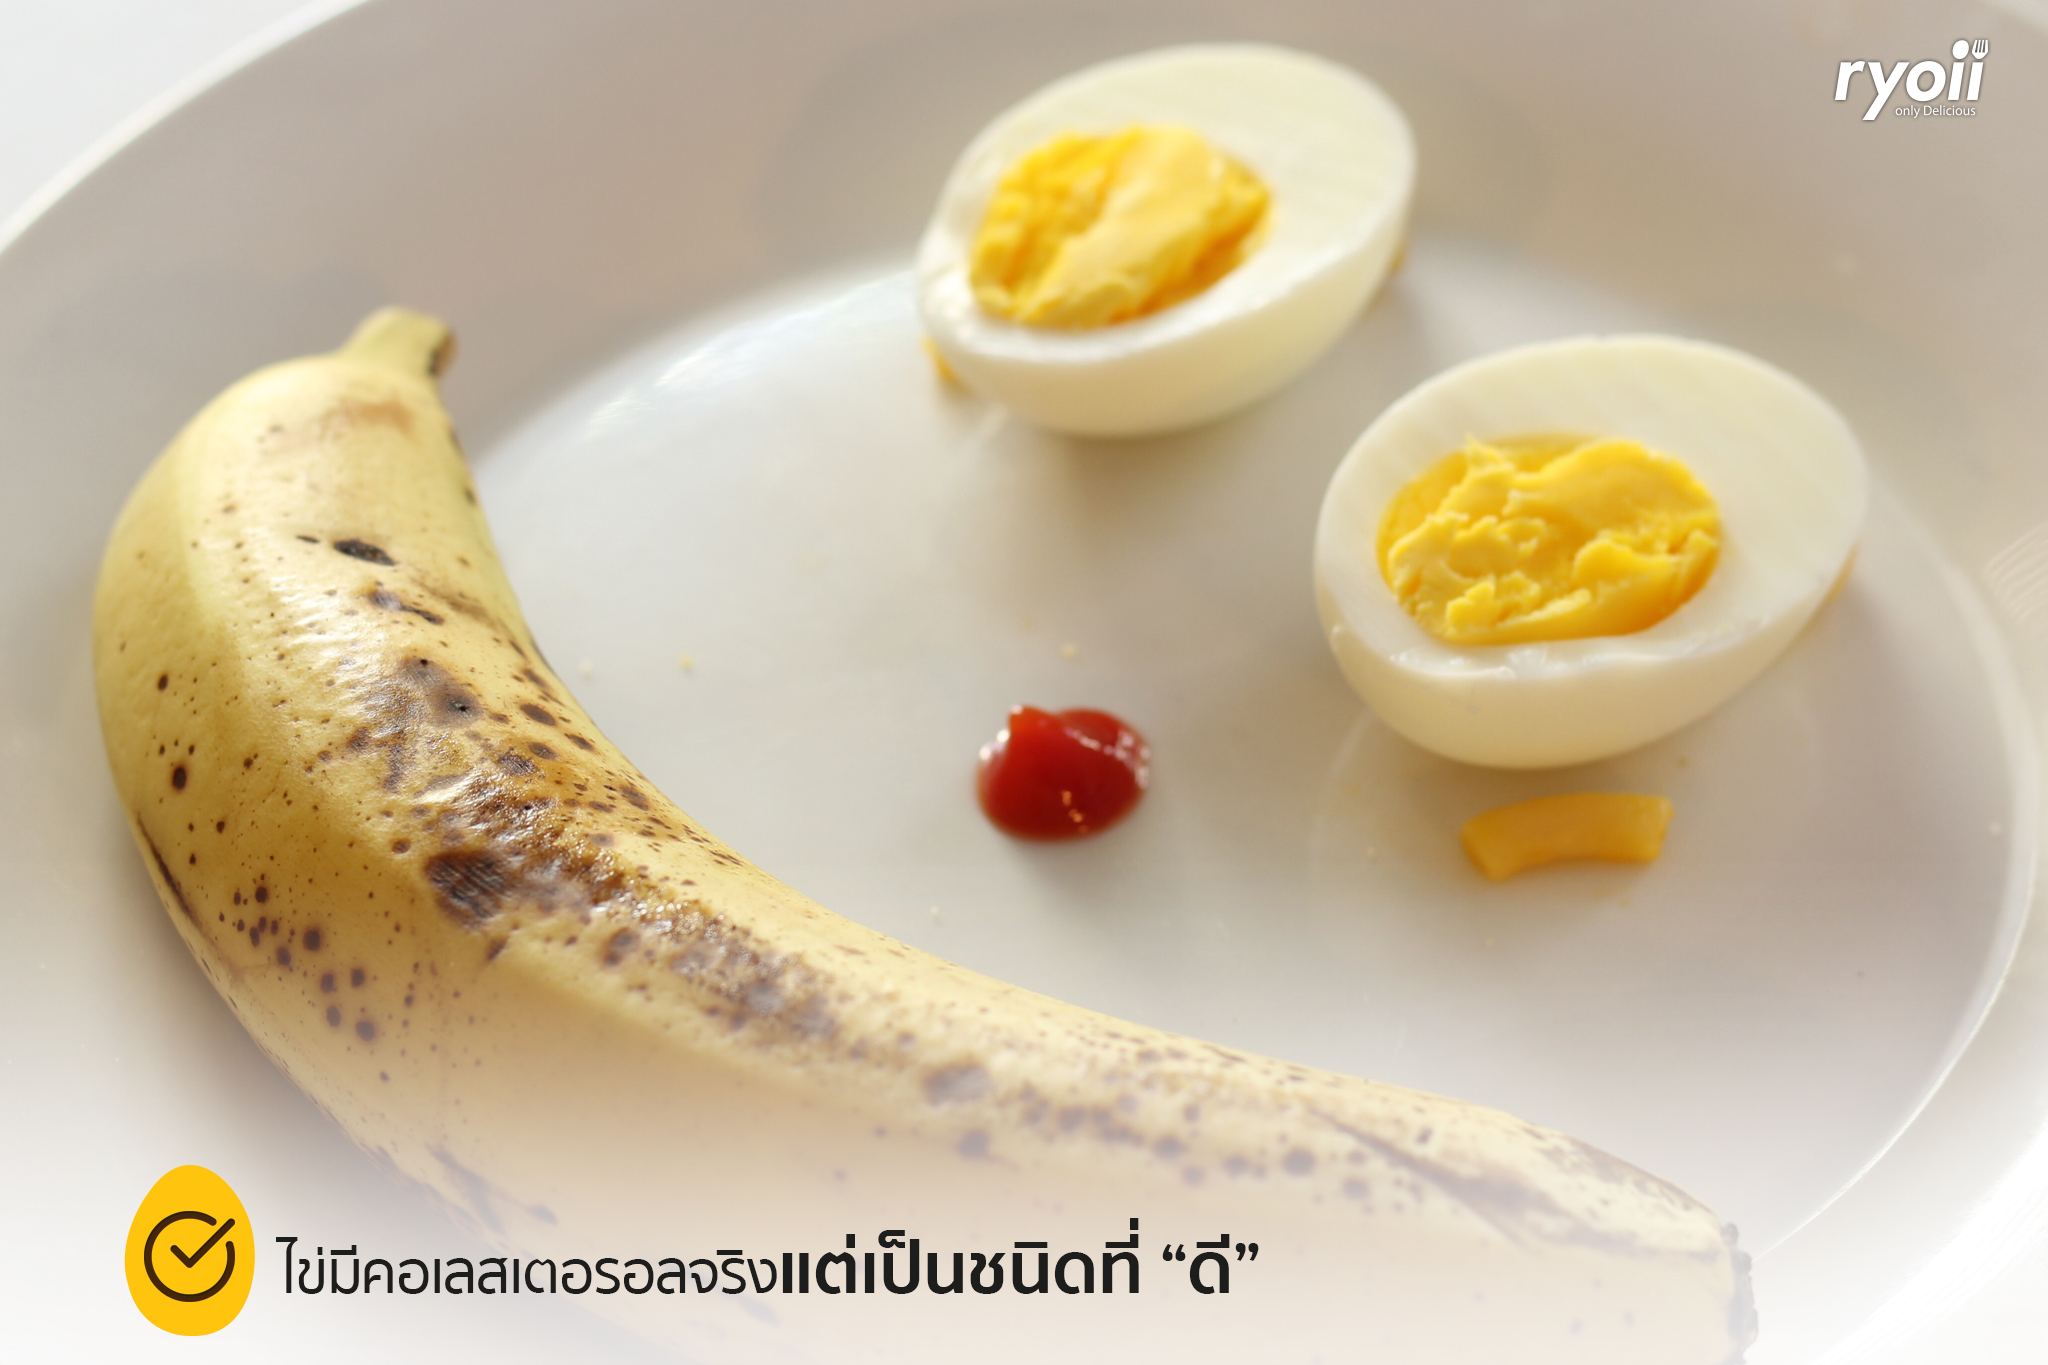 กินไข่วันละกี่ฟอง จึงจะดี และมีประโยชน์ต่อร่างกาย  ขอชวนท้าพิสูจน์ความเชื่อเรื่องไข่! - Ryoii